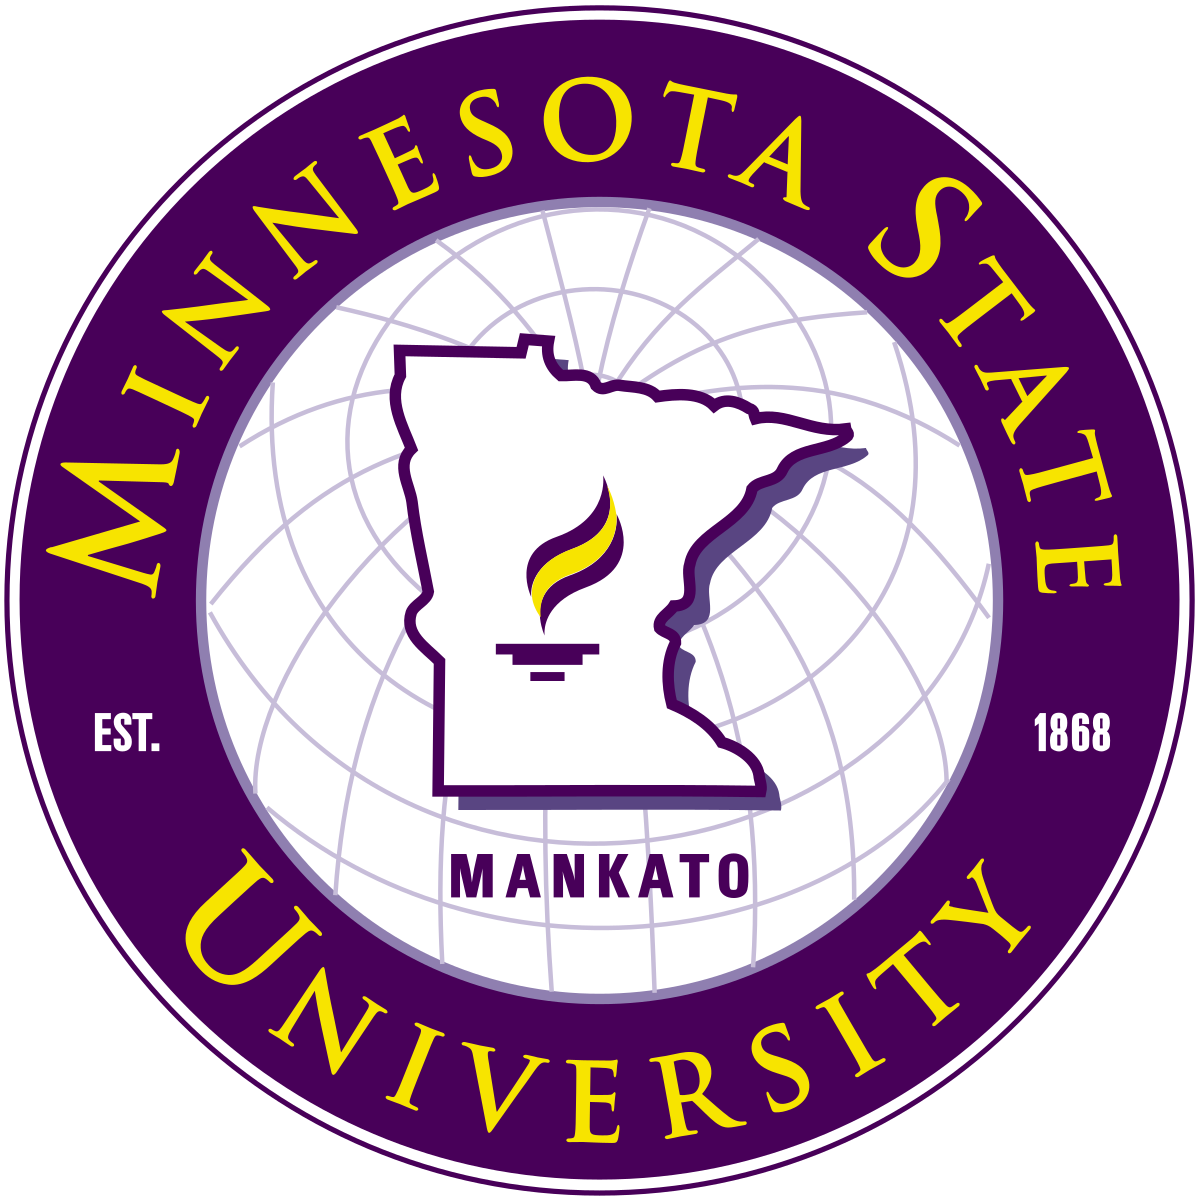 Đại học Minnesota State University Mankato (MNSU)